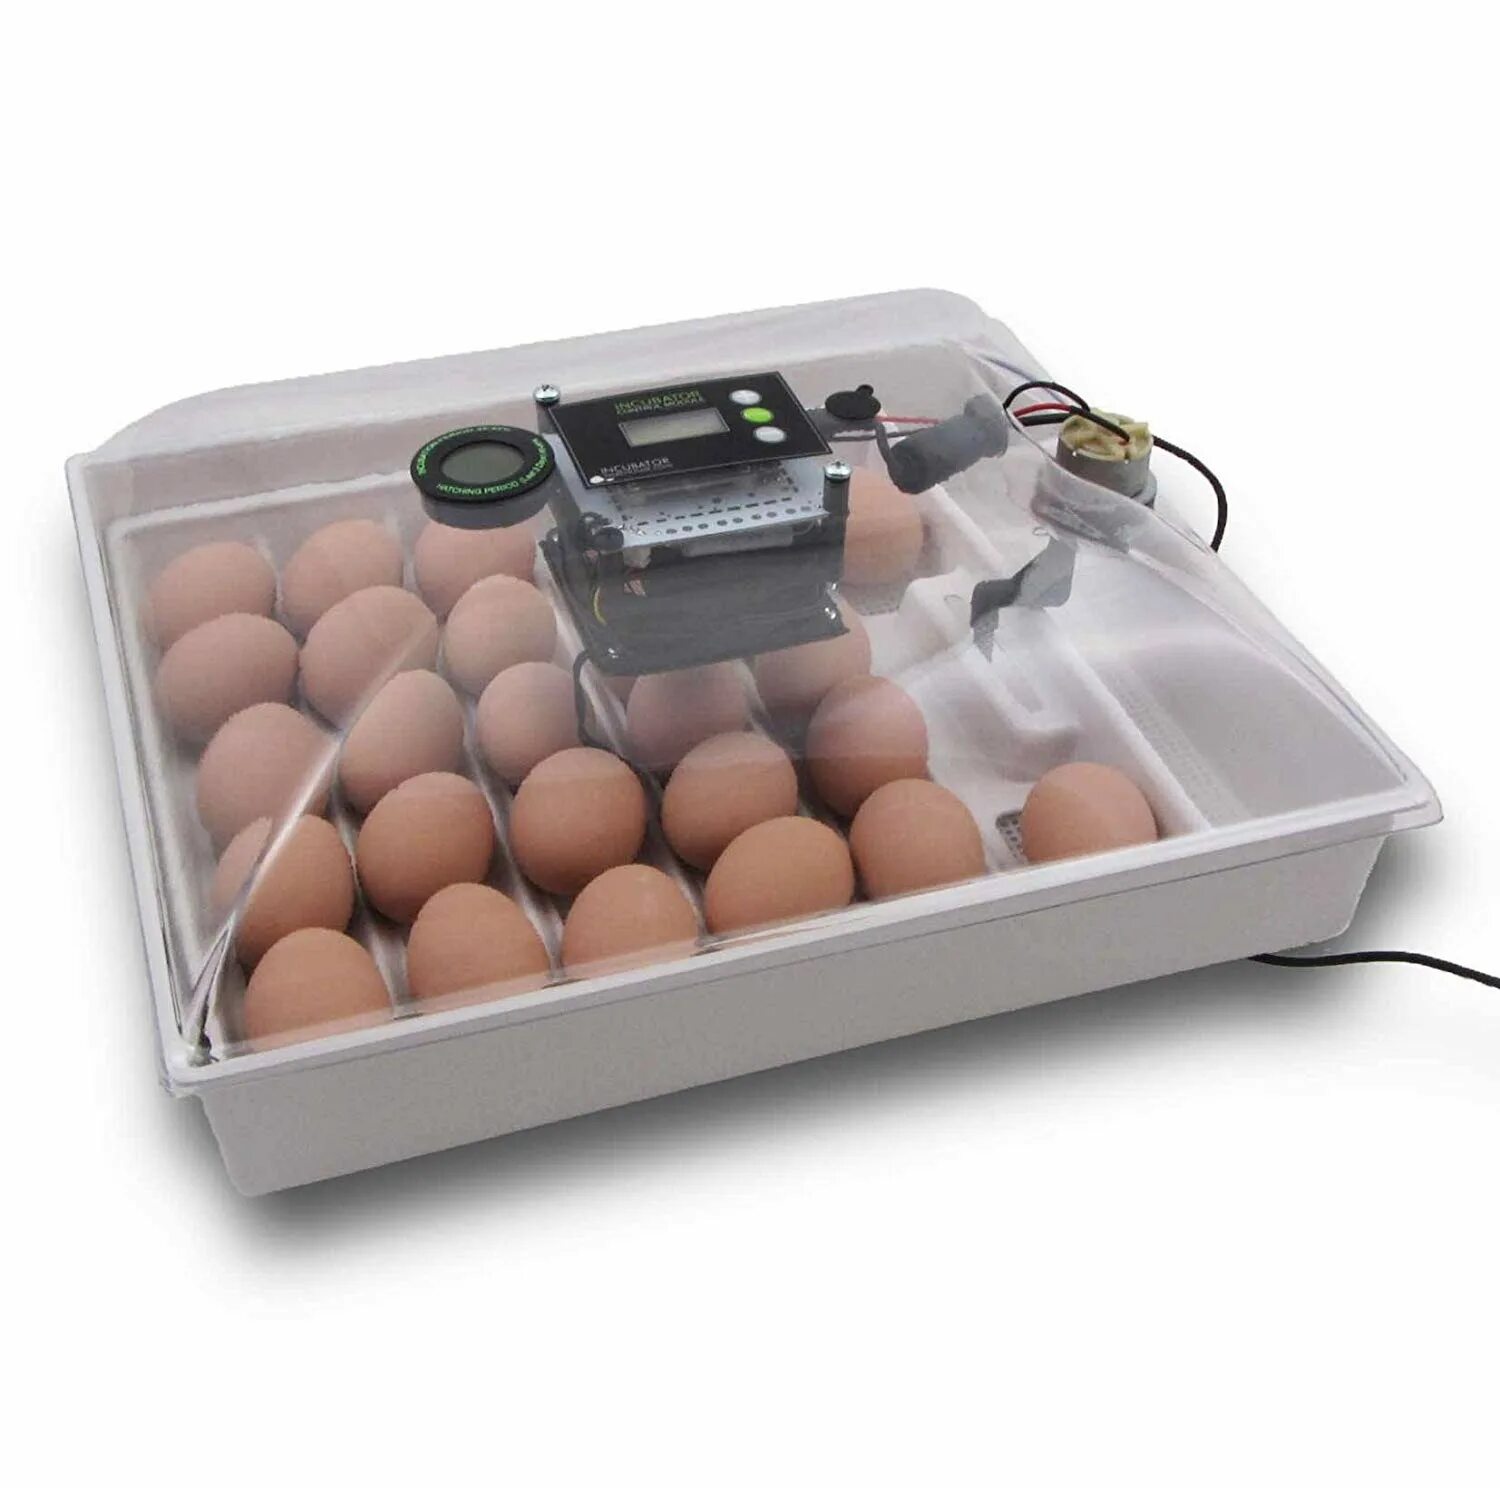 Оптимальный инкубатор. Инкубатор Egg incubator. Инкубатор FLORAFLEX incubator Kit. Инкубатор SITITEK 36. Кв400 binger инкубатор для яиц.